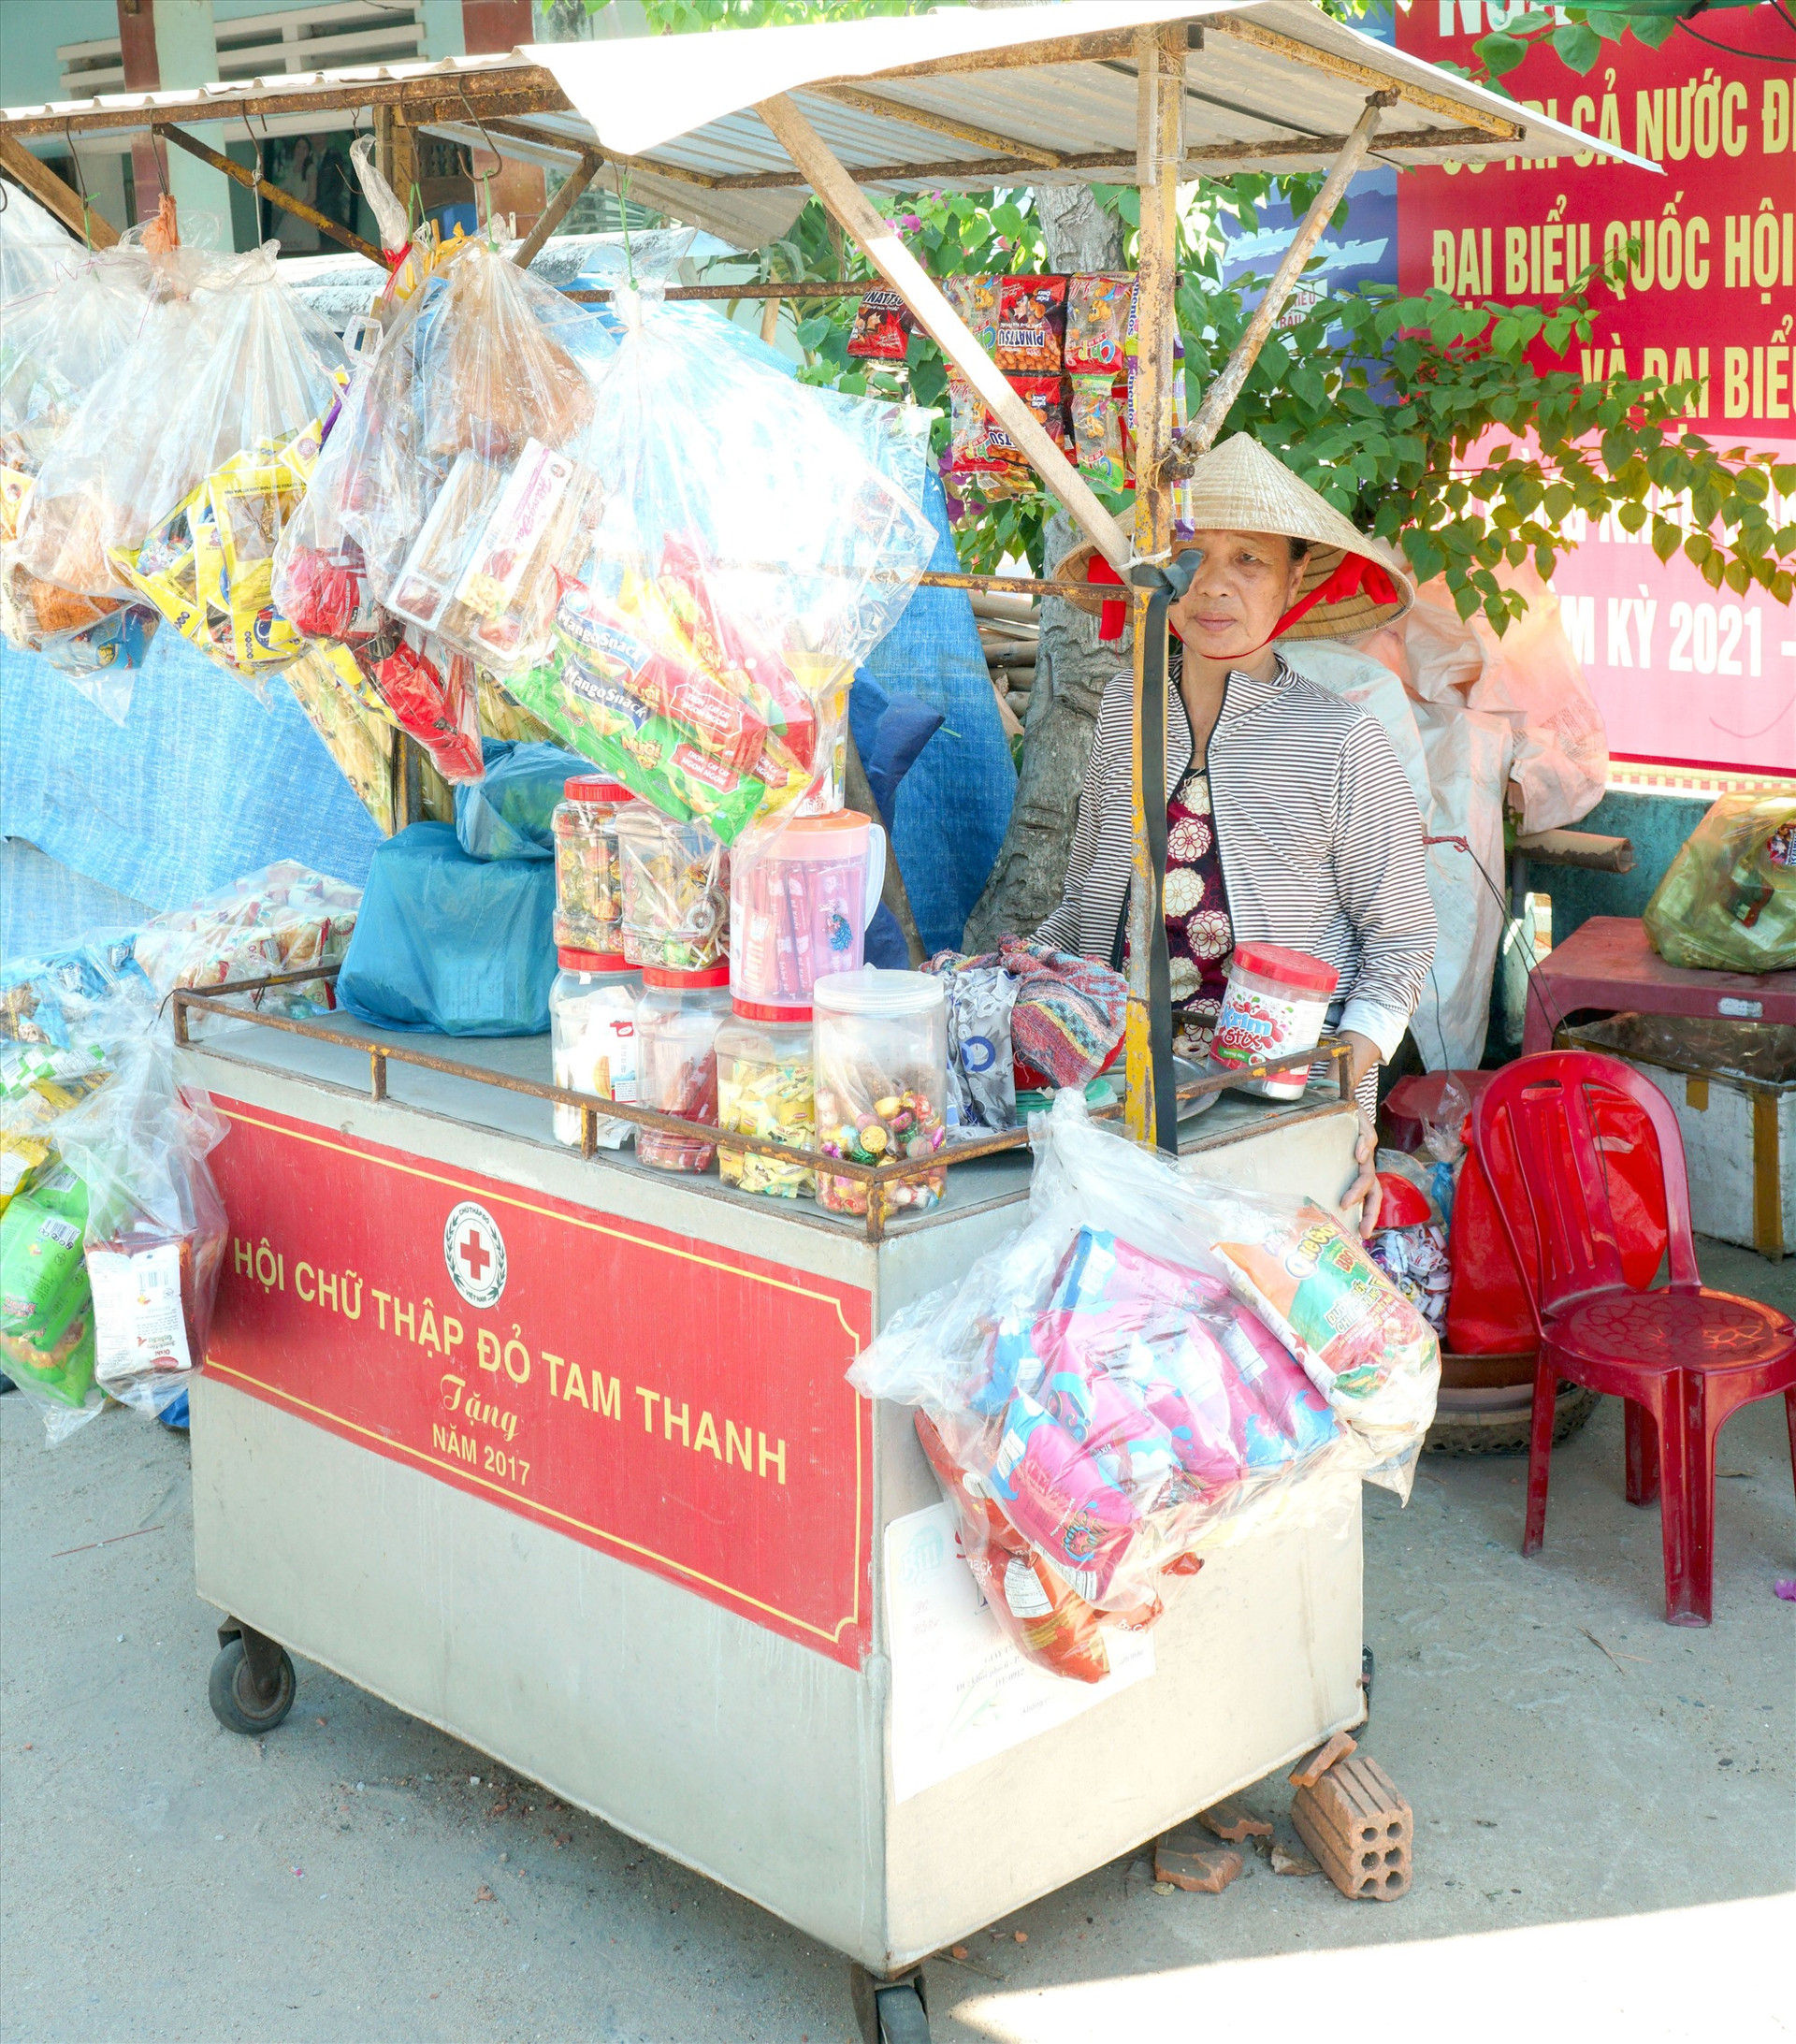 Bà Trần Thị Lý (thôn Hòa Trung) đang sử dụng hiệu quả chiếc xe đẩy bán hàng do Hội Chữ thập đỏ xã Tam Thanh tặng. Ảnh: NGUYỄN ĐIỆN NGỌC